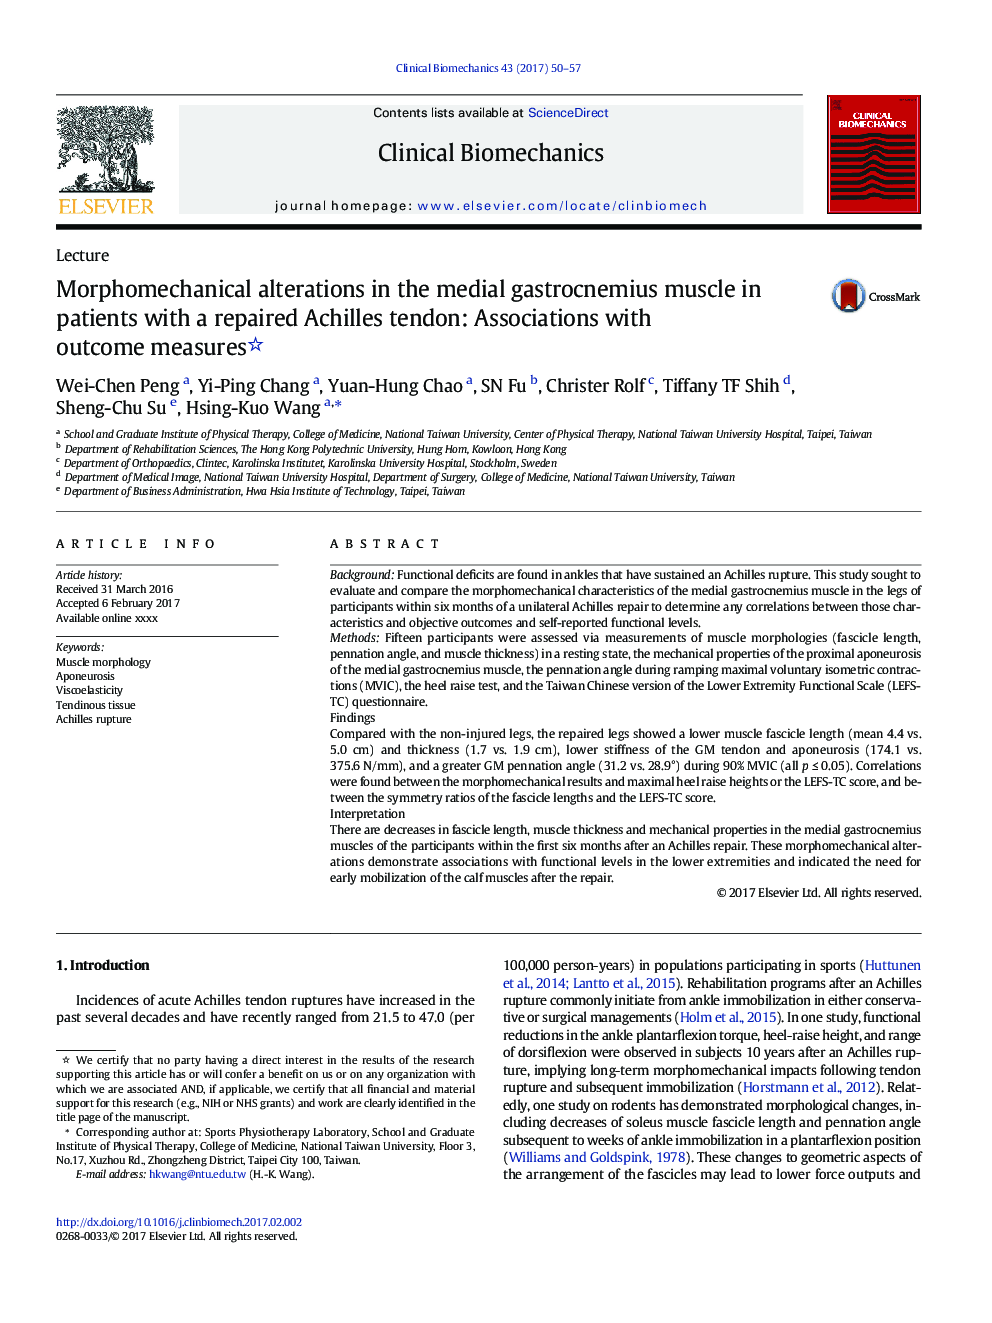 تغییرات مورفومیکانیک در عضله گاستروکنمیوس مدفوع در بیماران مبتلا به تاندون آشیل ترمیم شده: انجمن با معیارهای نتیجه 